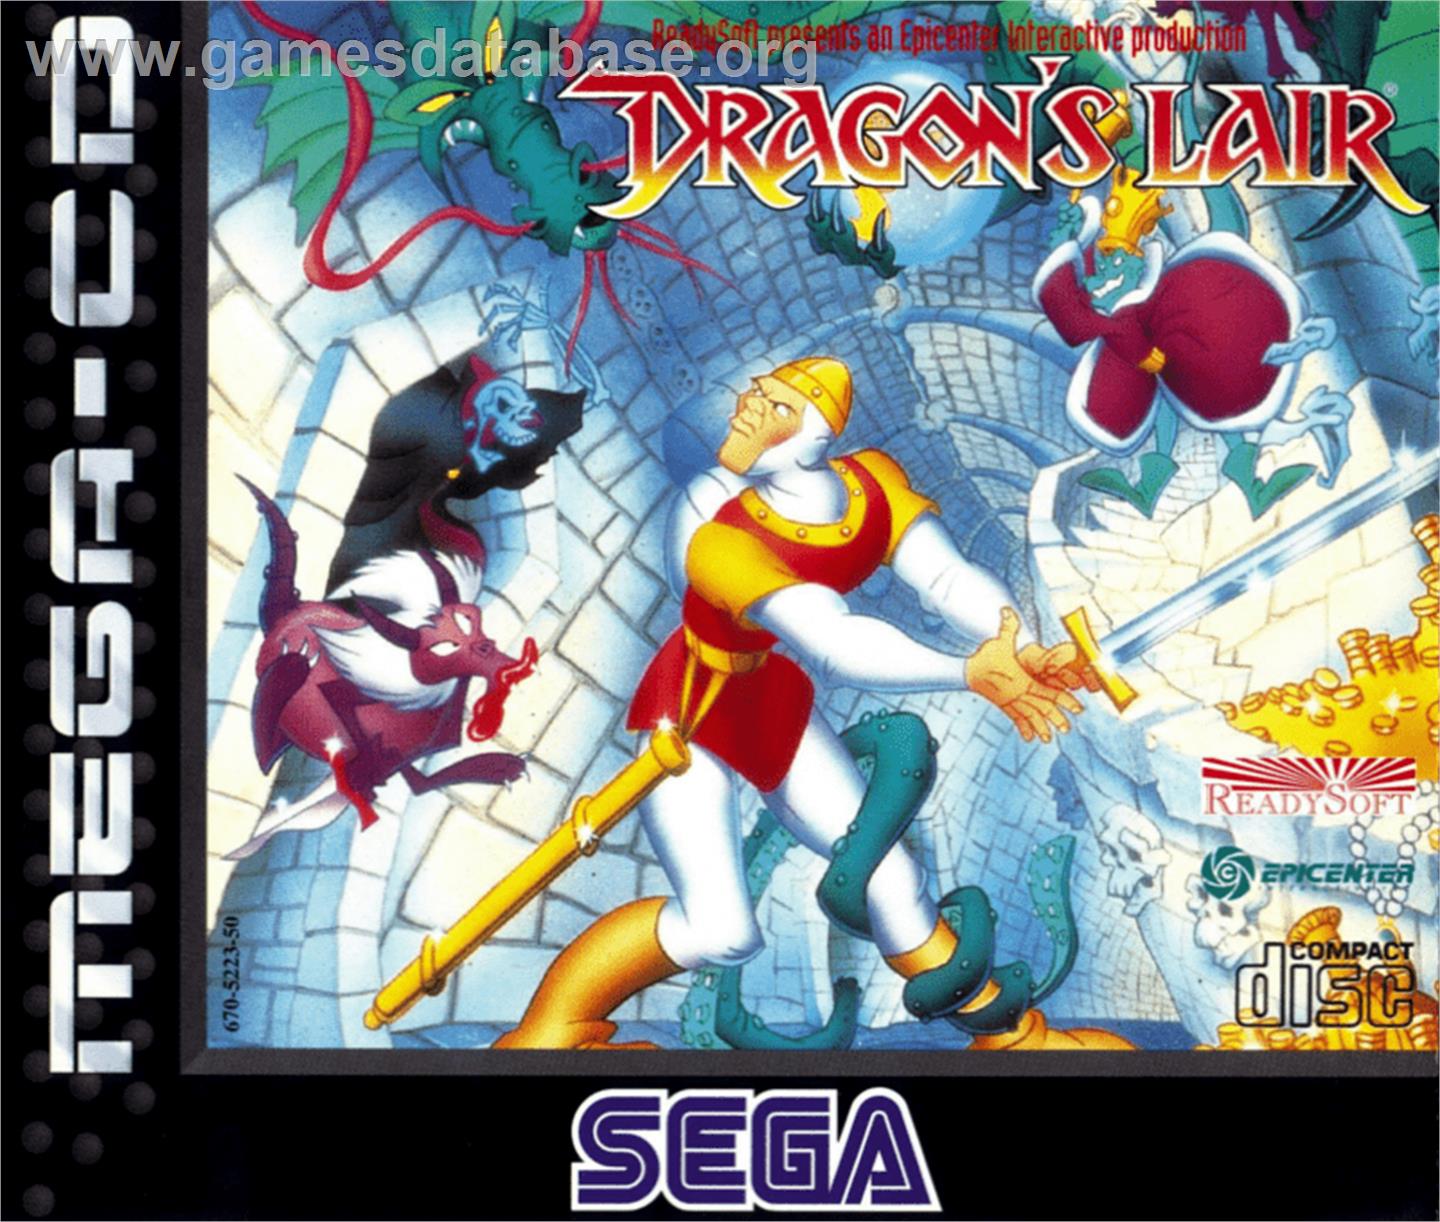 Dragon's Lair - Sega CD - Artwork - Box